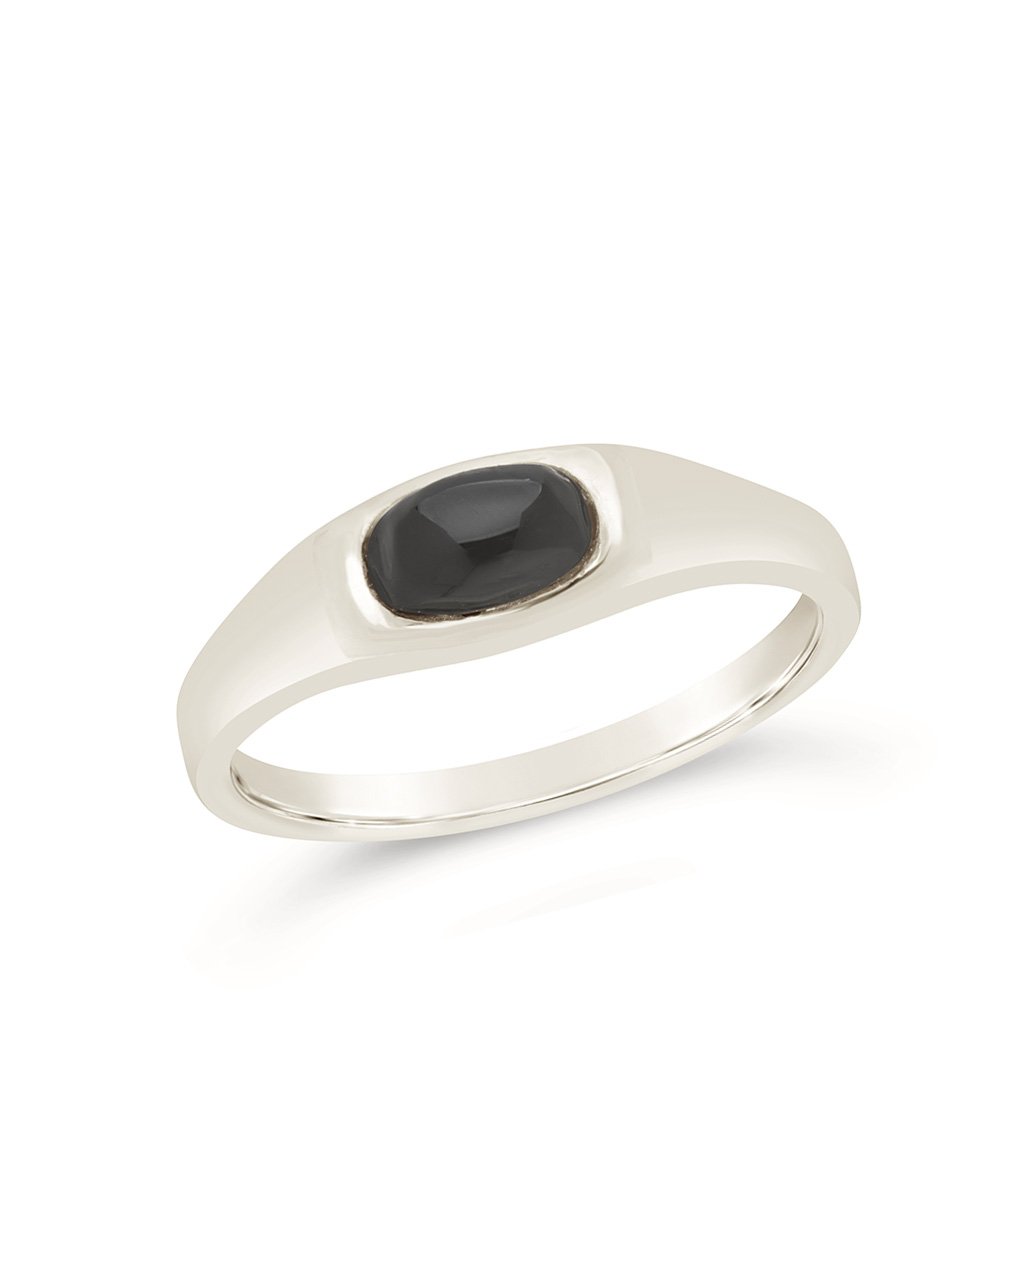 Men's Black Onyx Signet Ring